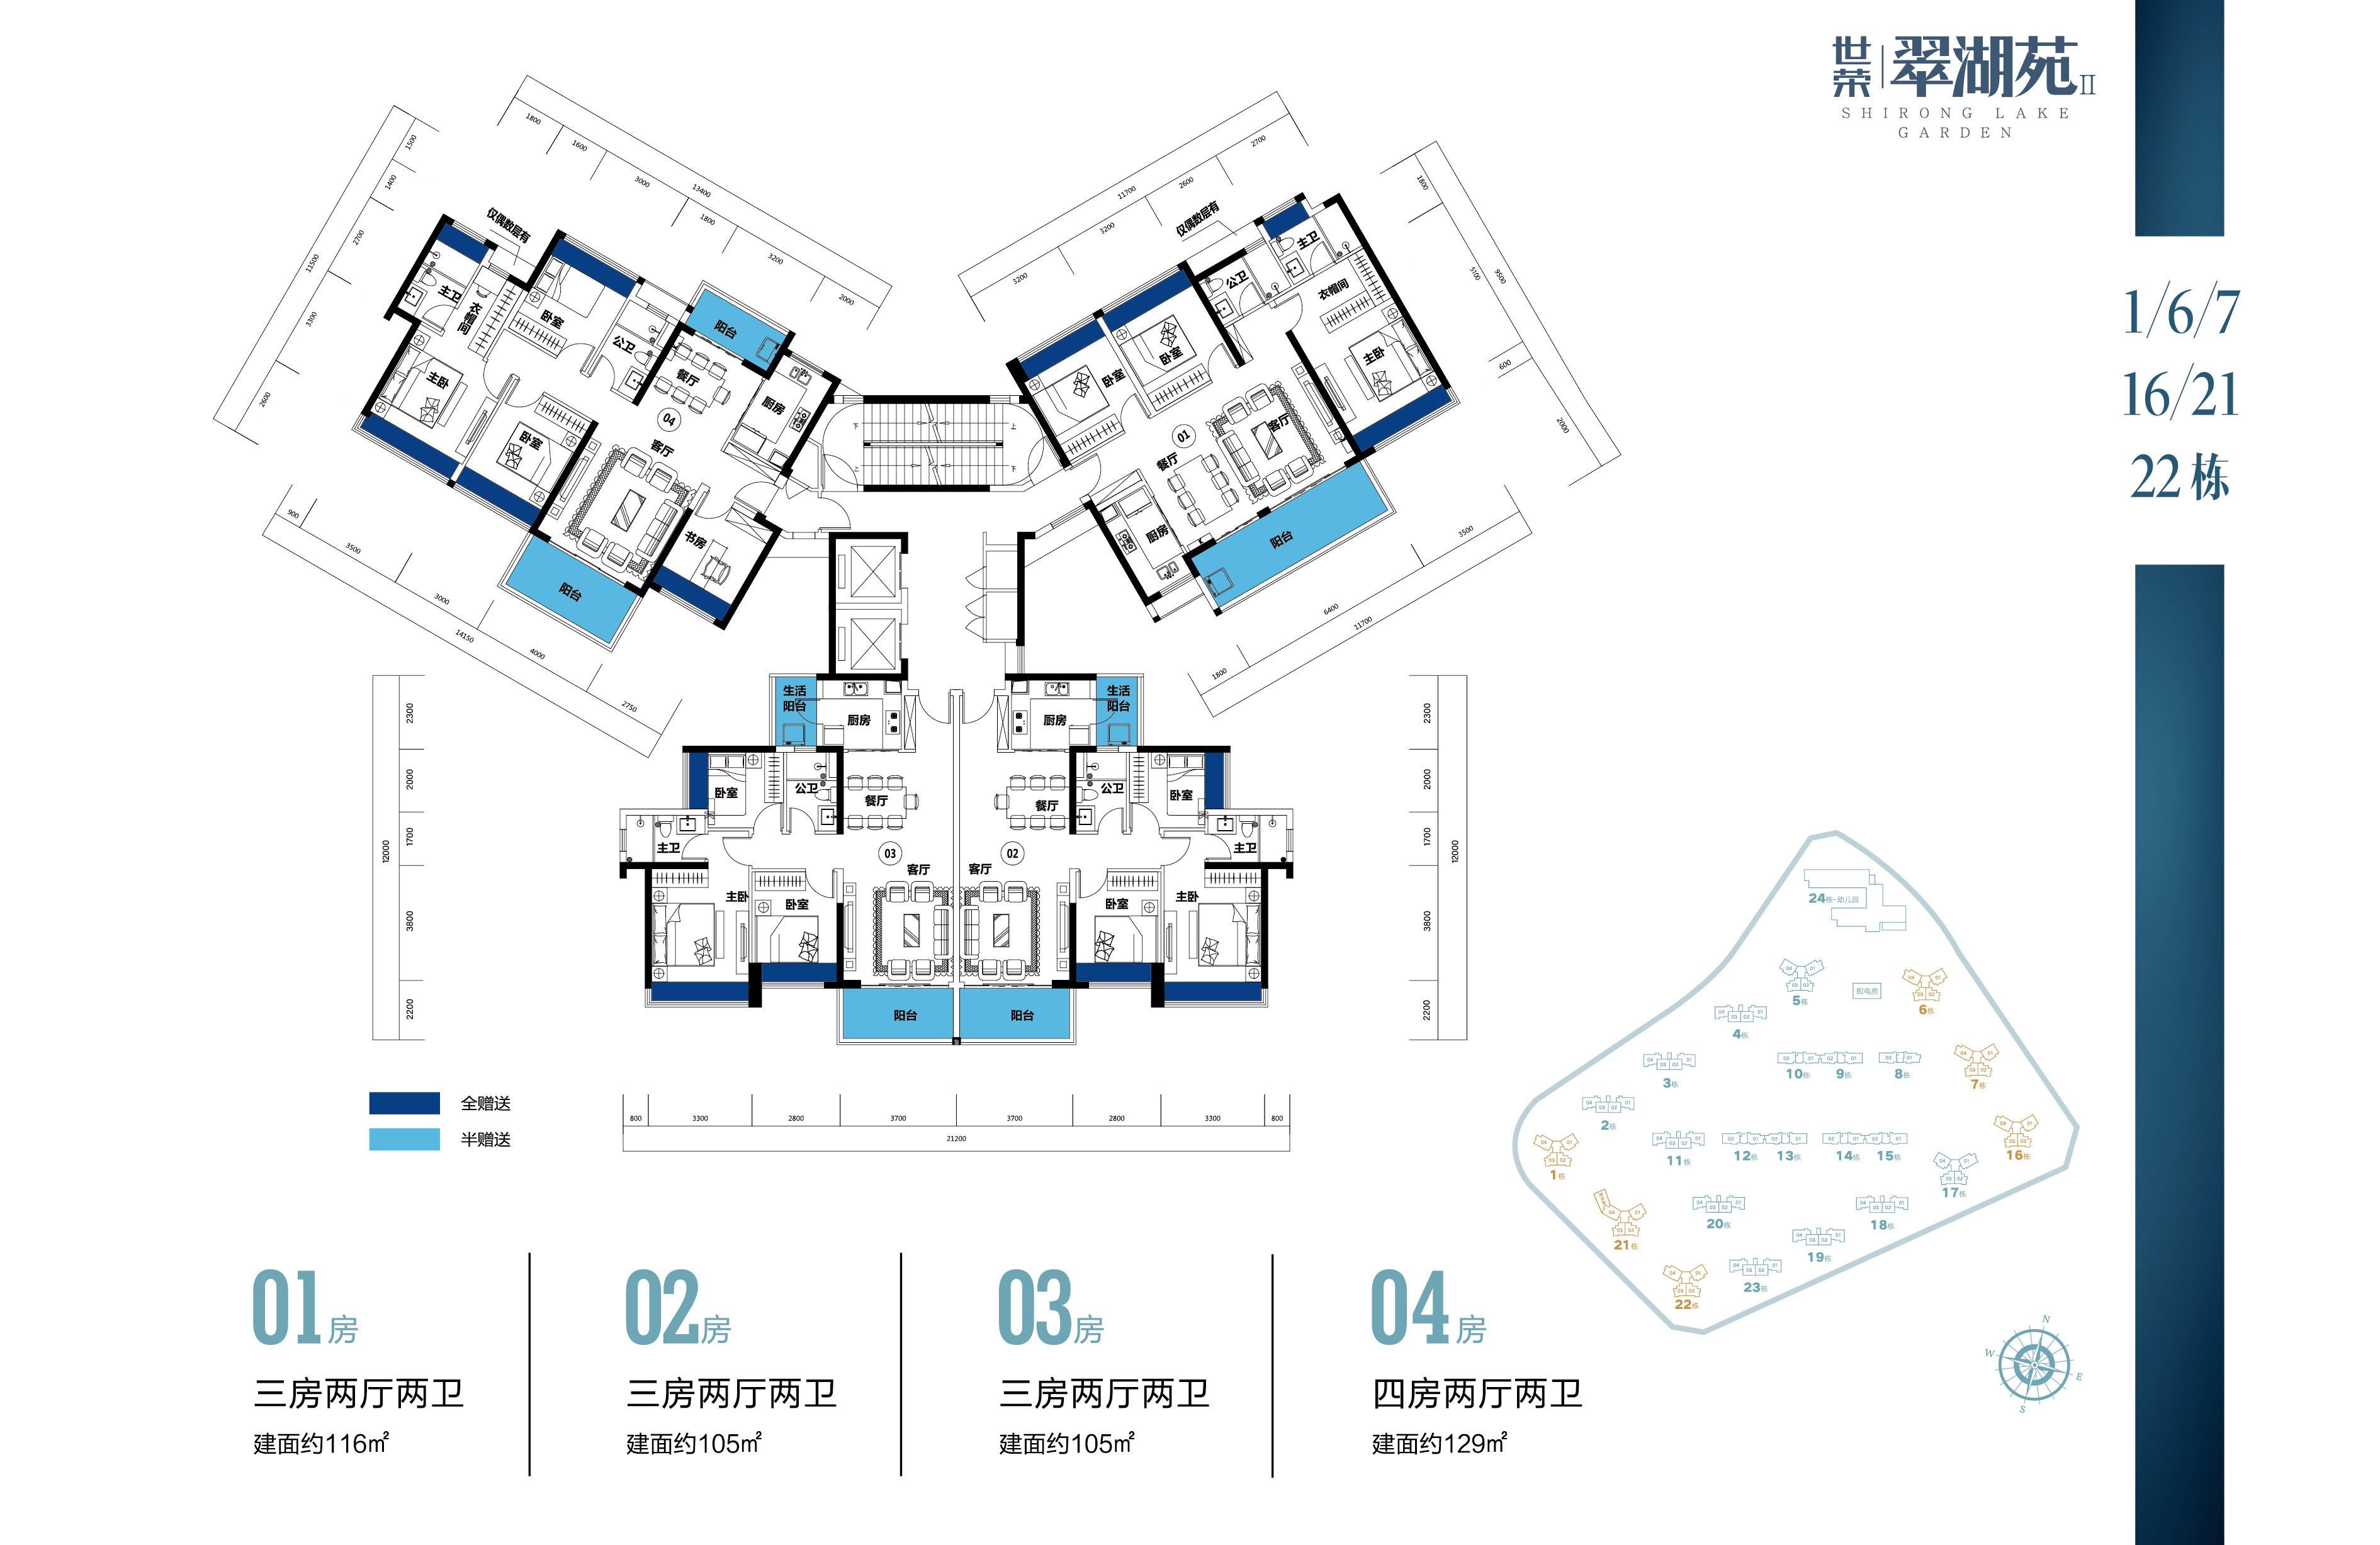 世荣翠湖苑二期 1、6、7、16、21、22栋楼层平面图 多种户型 建面105-129㎡